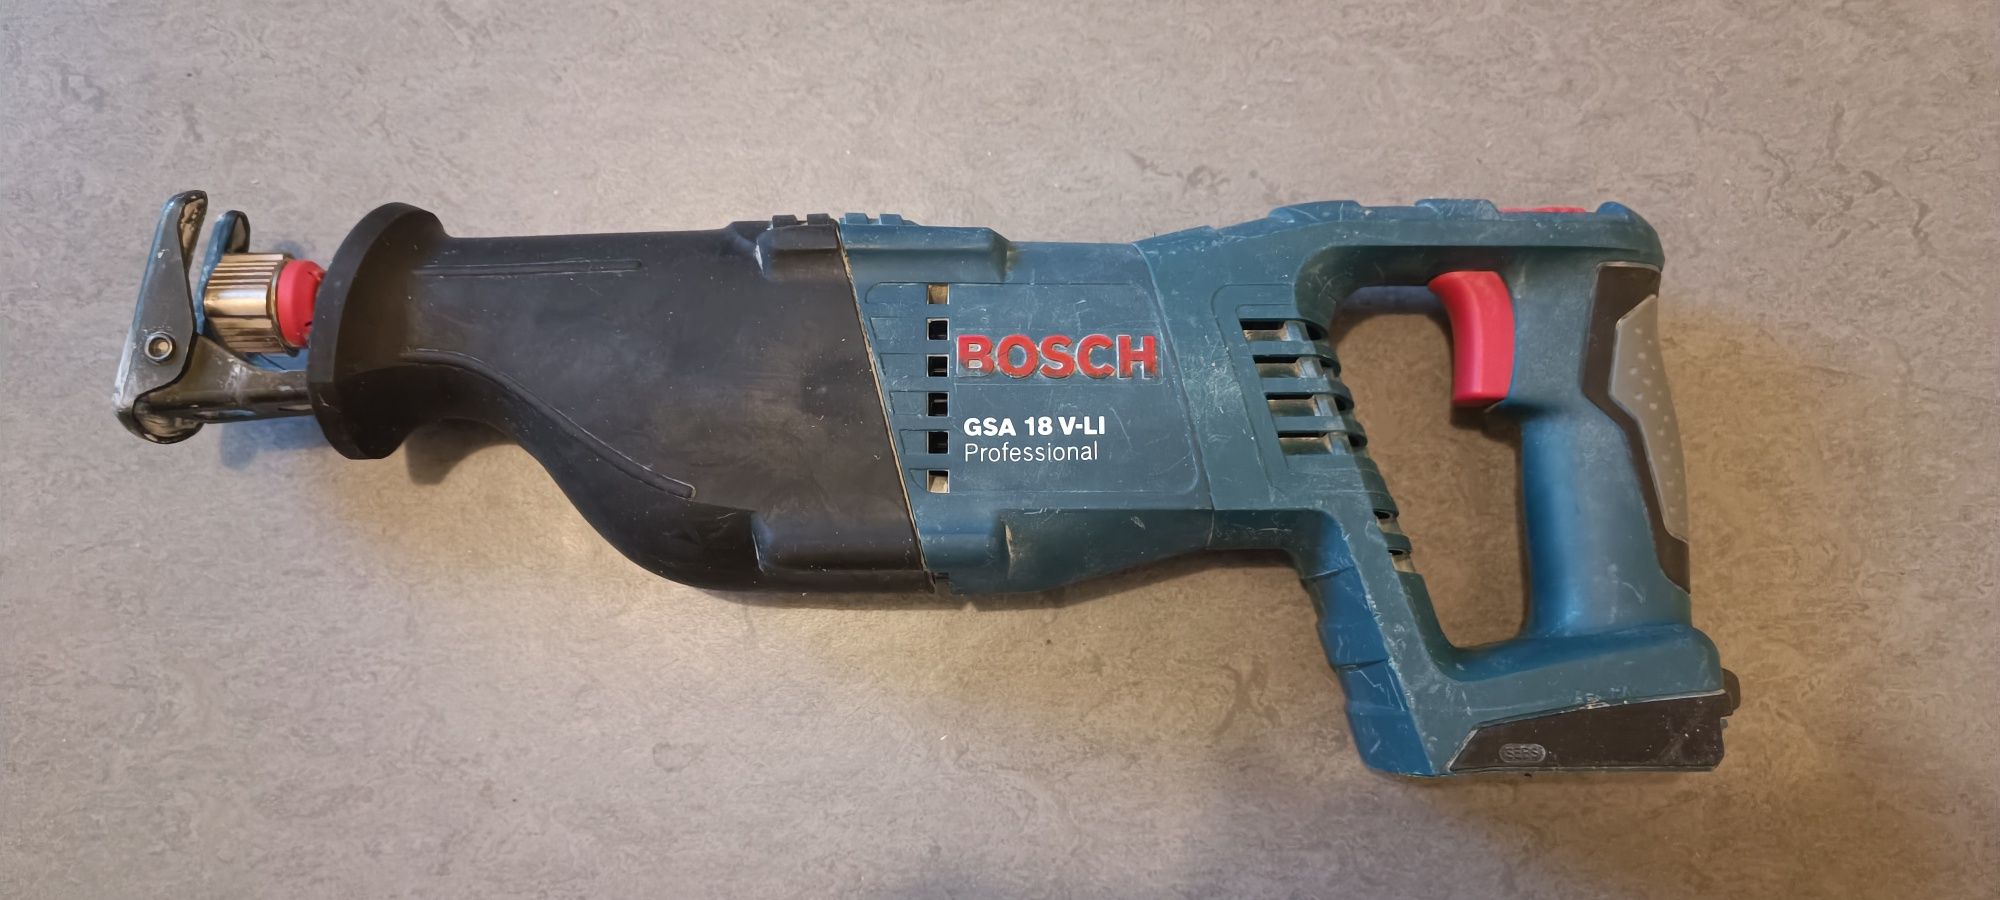 Сабельна пила Bosch GSA-18 LI Professional